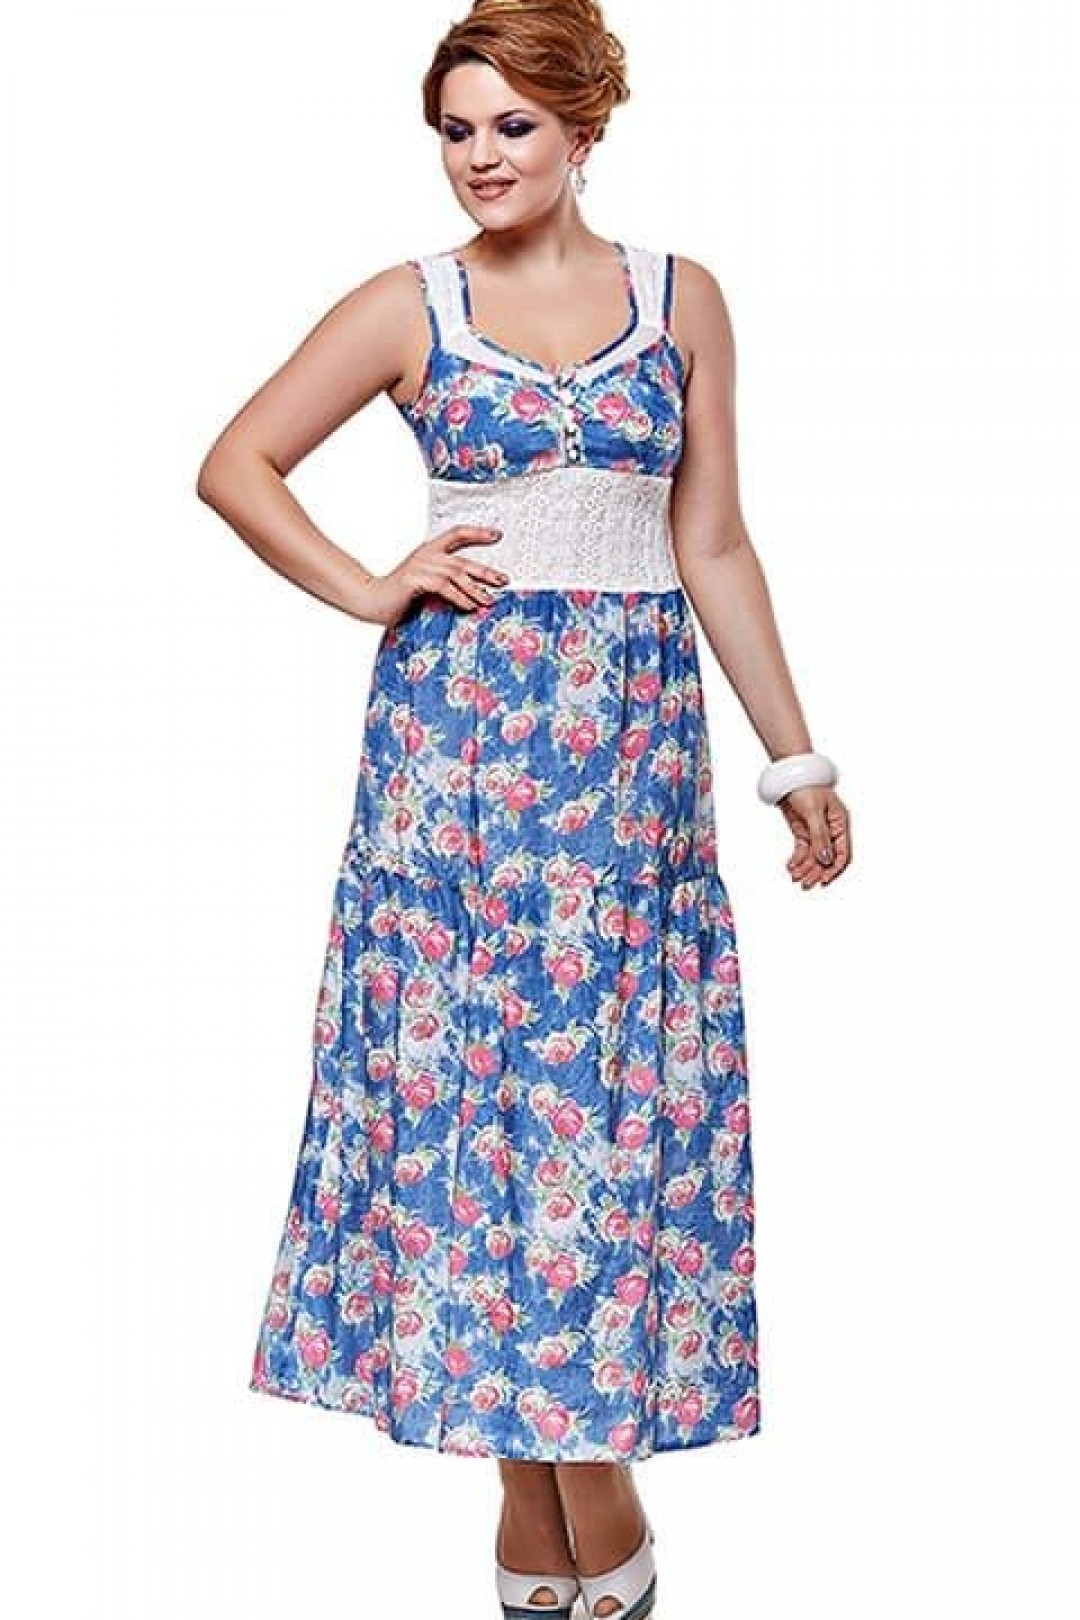 Платье LadySecret 3213-синий